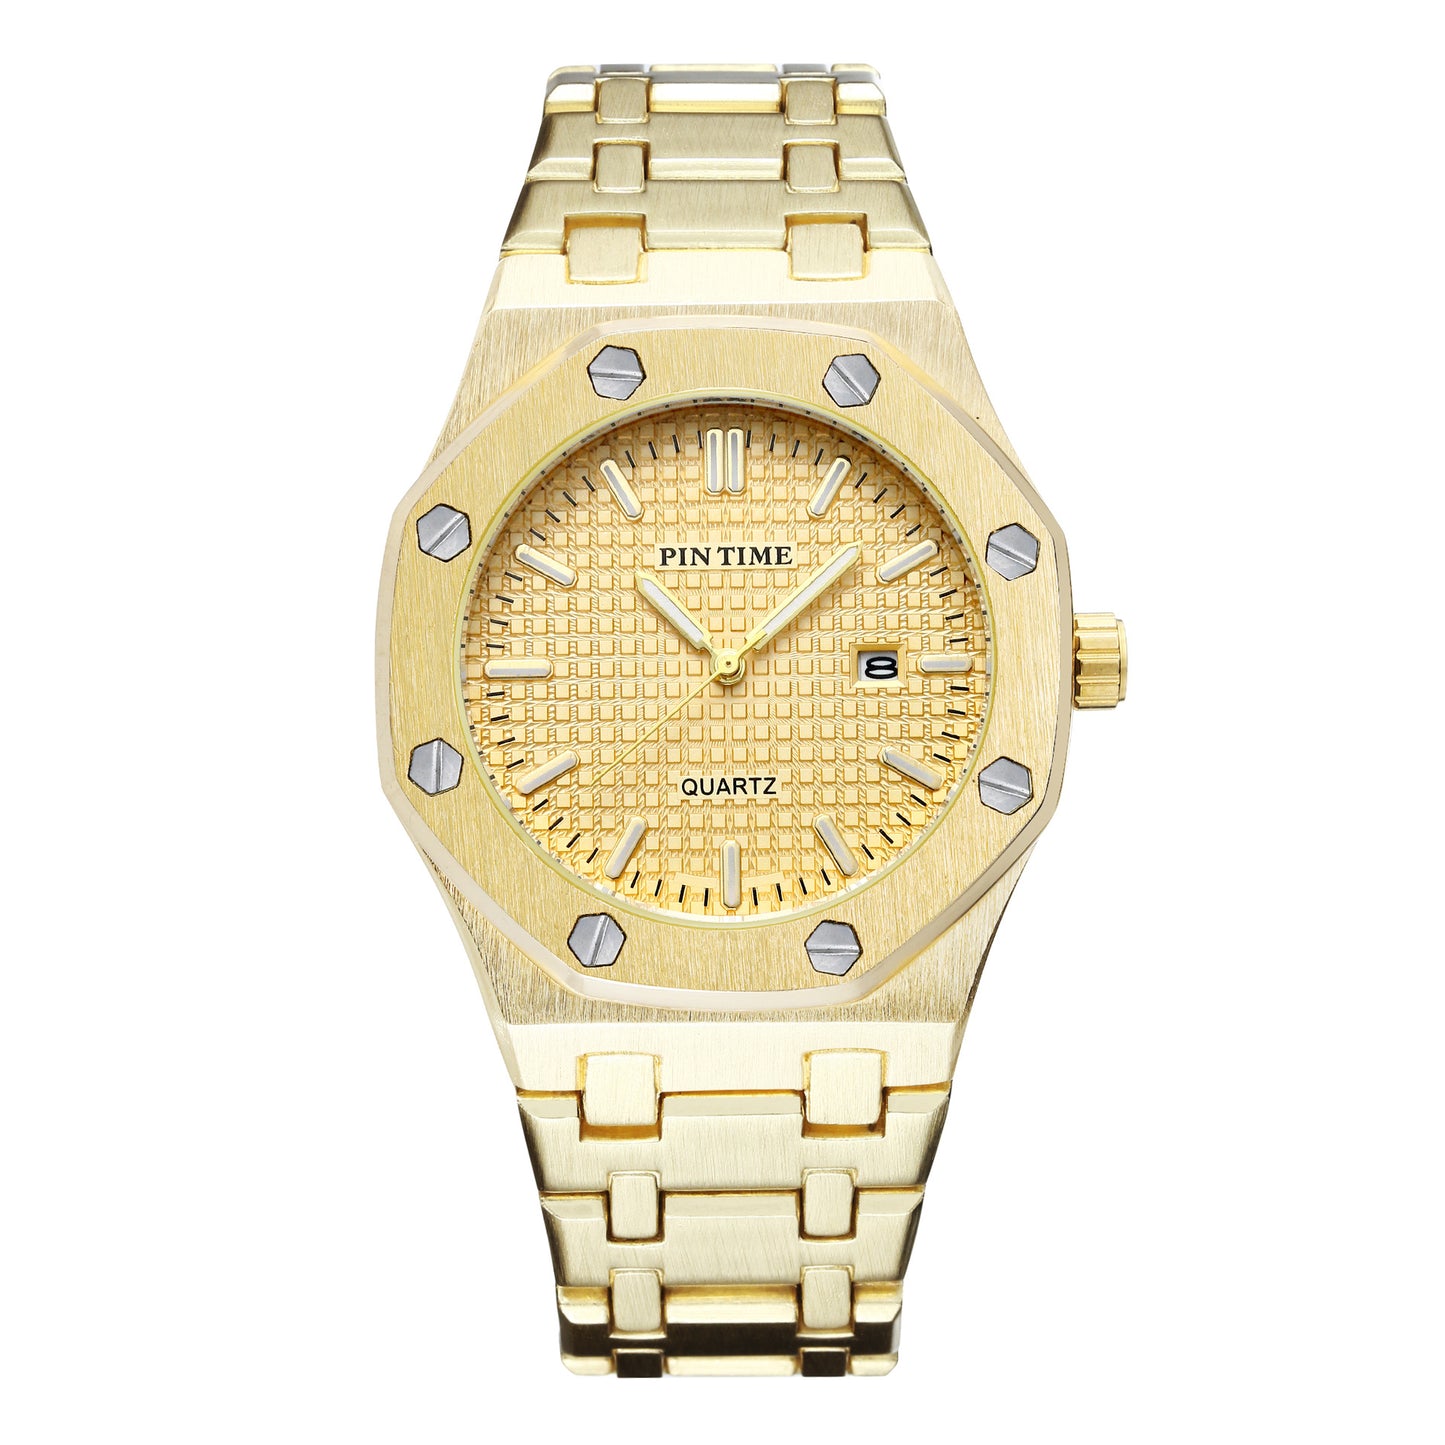 Automatic quartz watch - Golden white